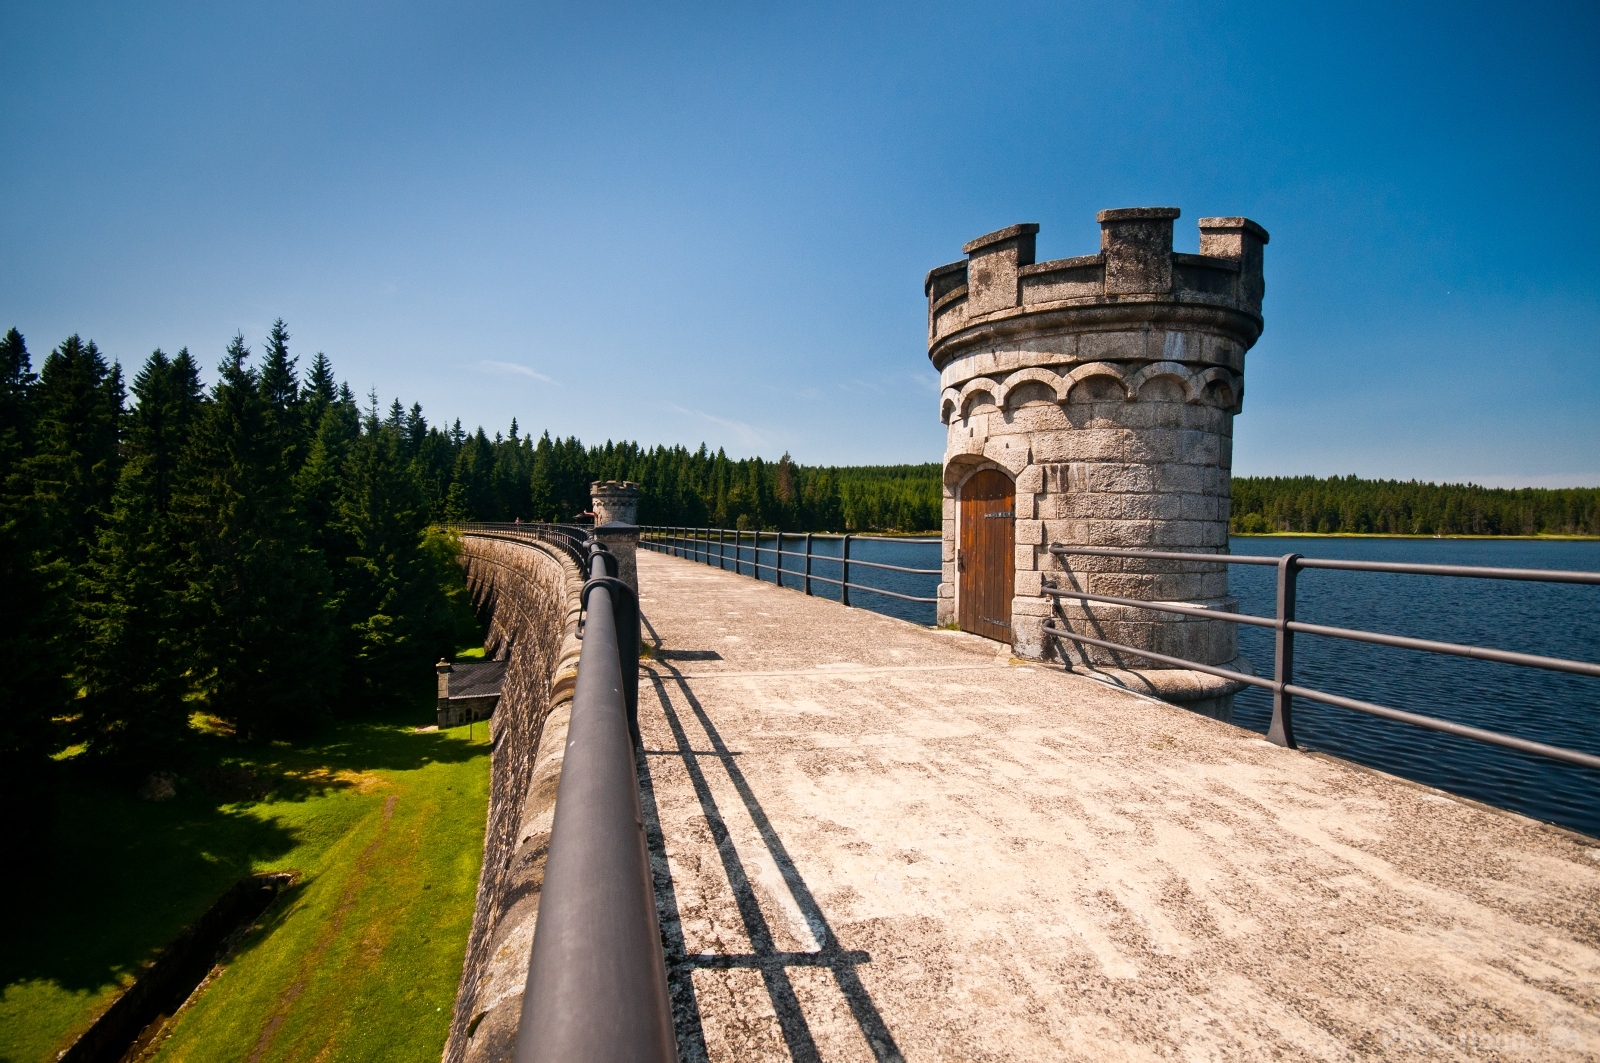 Image of Bedřichov water reservoir dam by VOJTa Herout